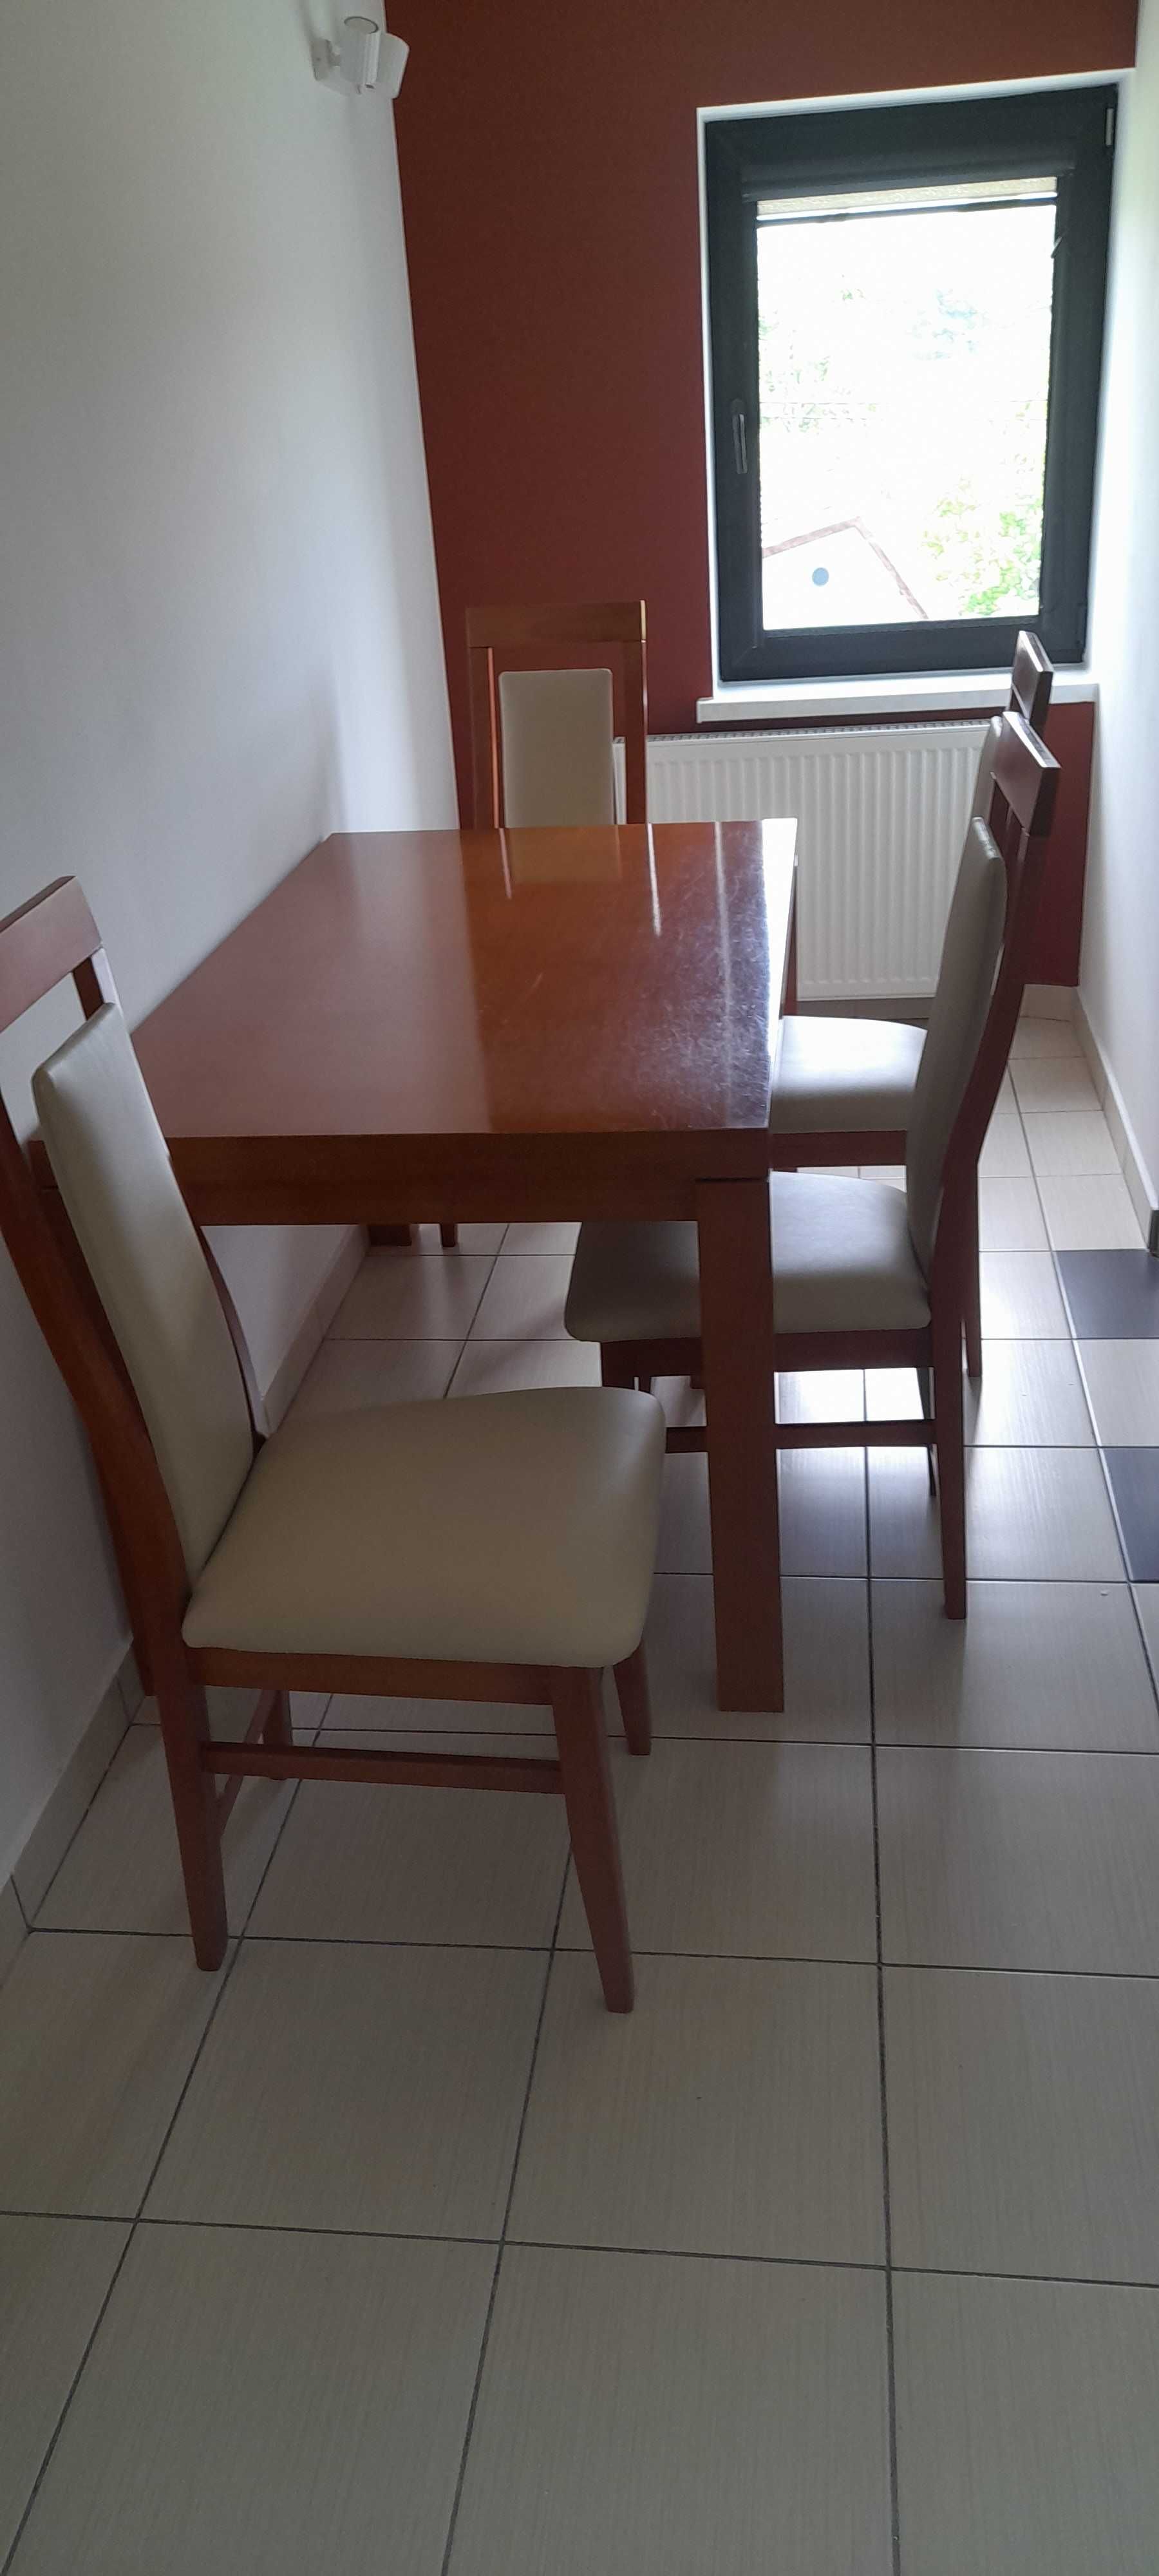 Stół kuchenny plus 4 krzesła